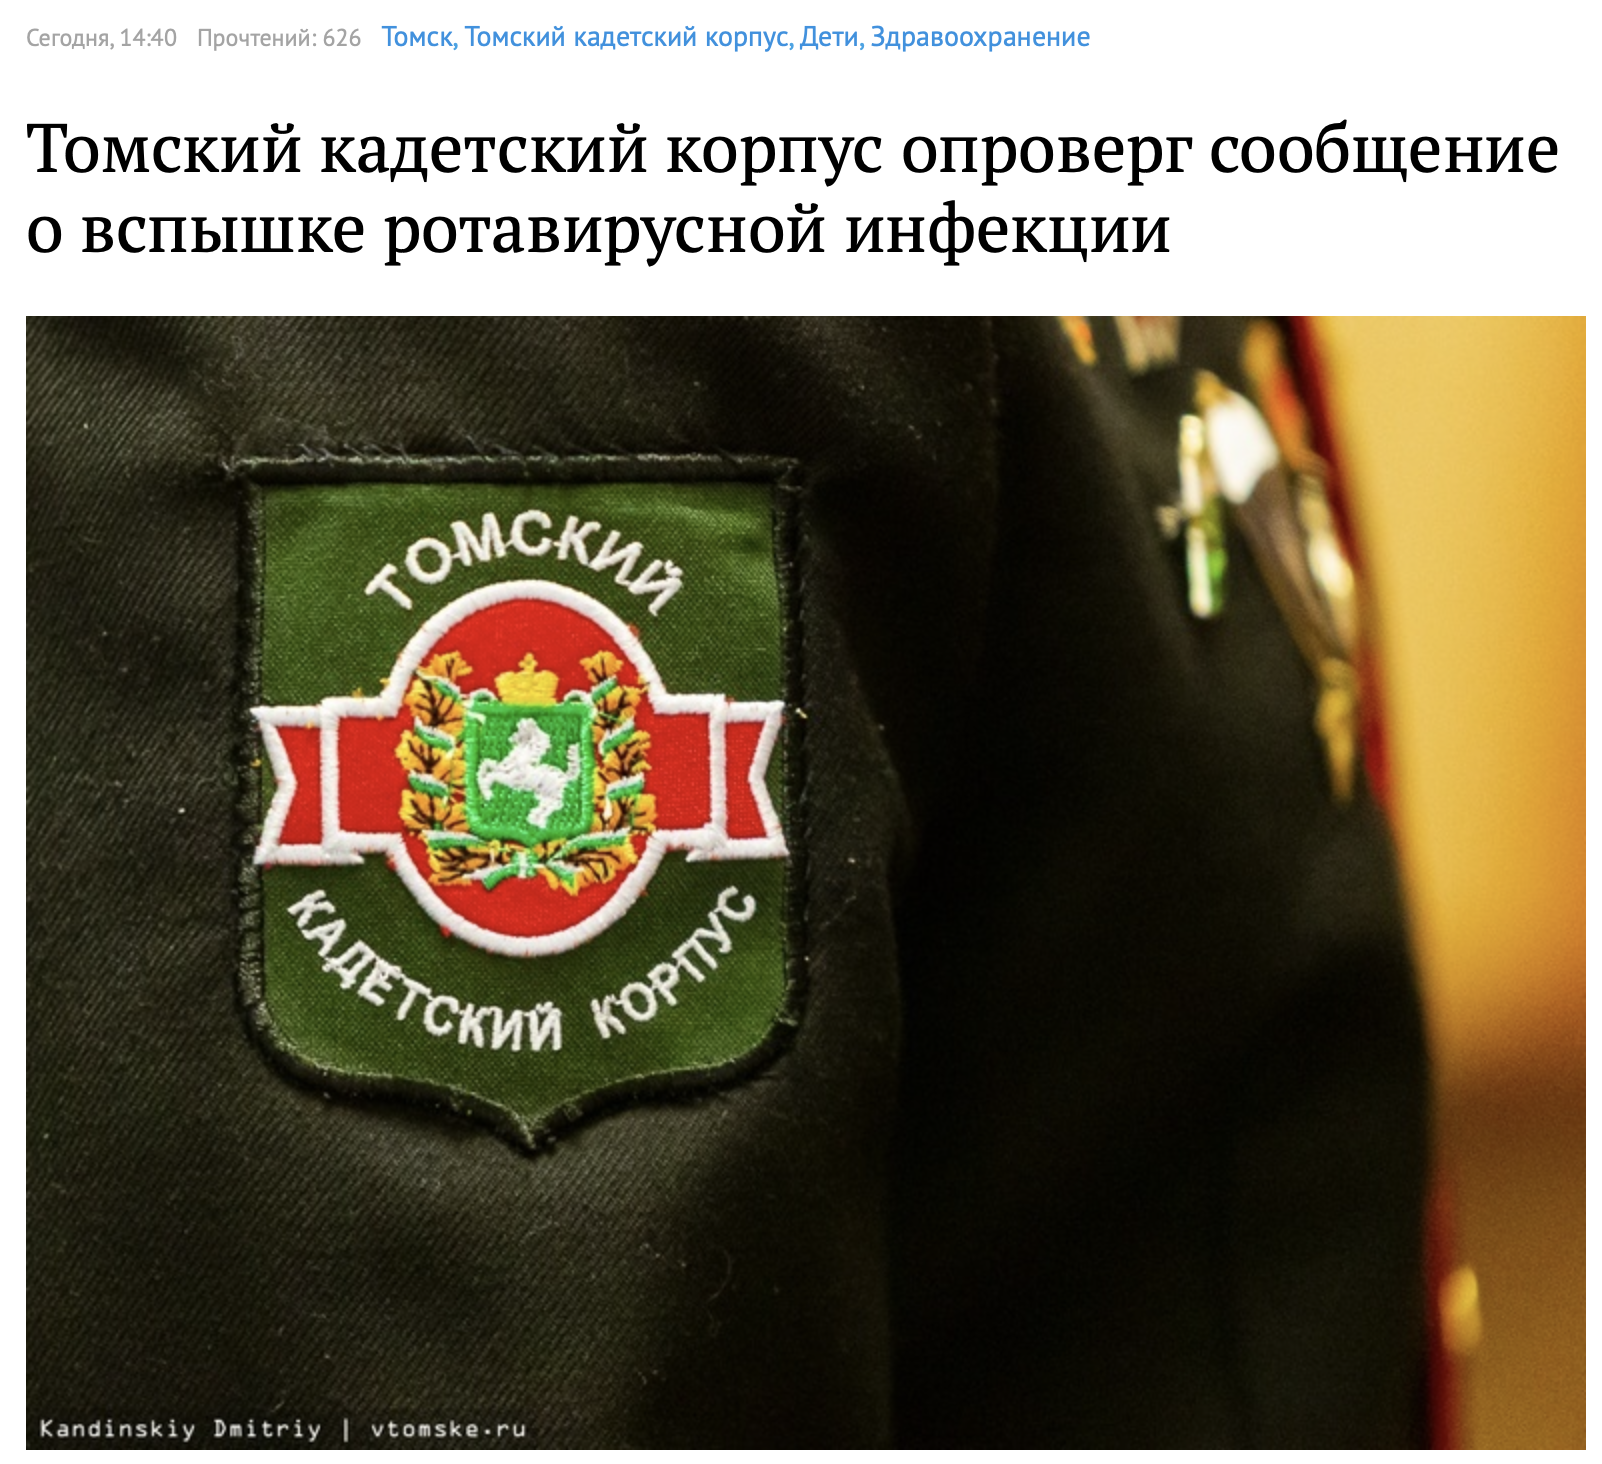 В Томском кадетском корпусе массово болеют ротавирусом